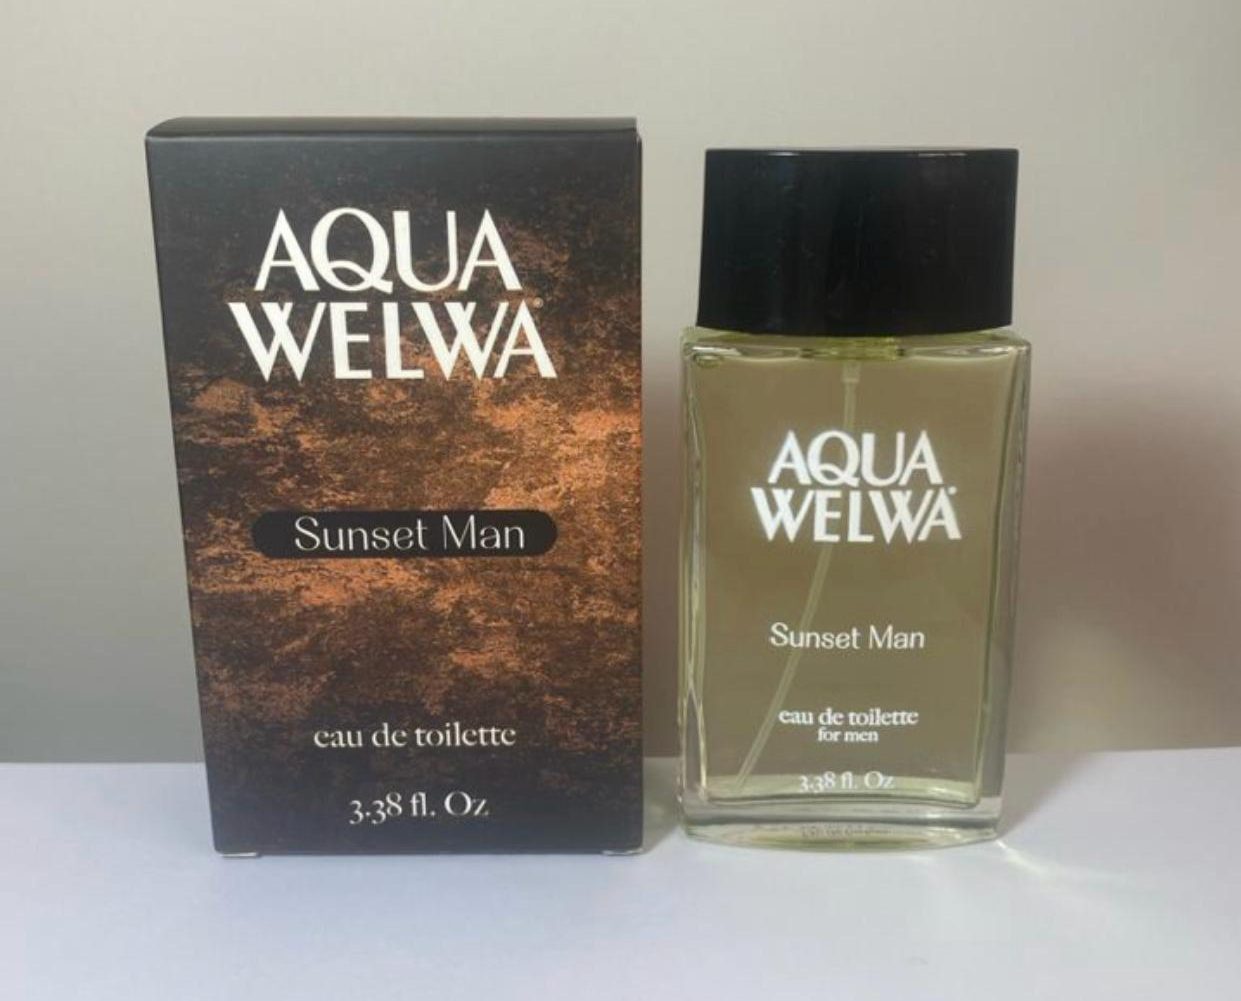 Aqua Welwa Sunset Man